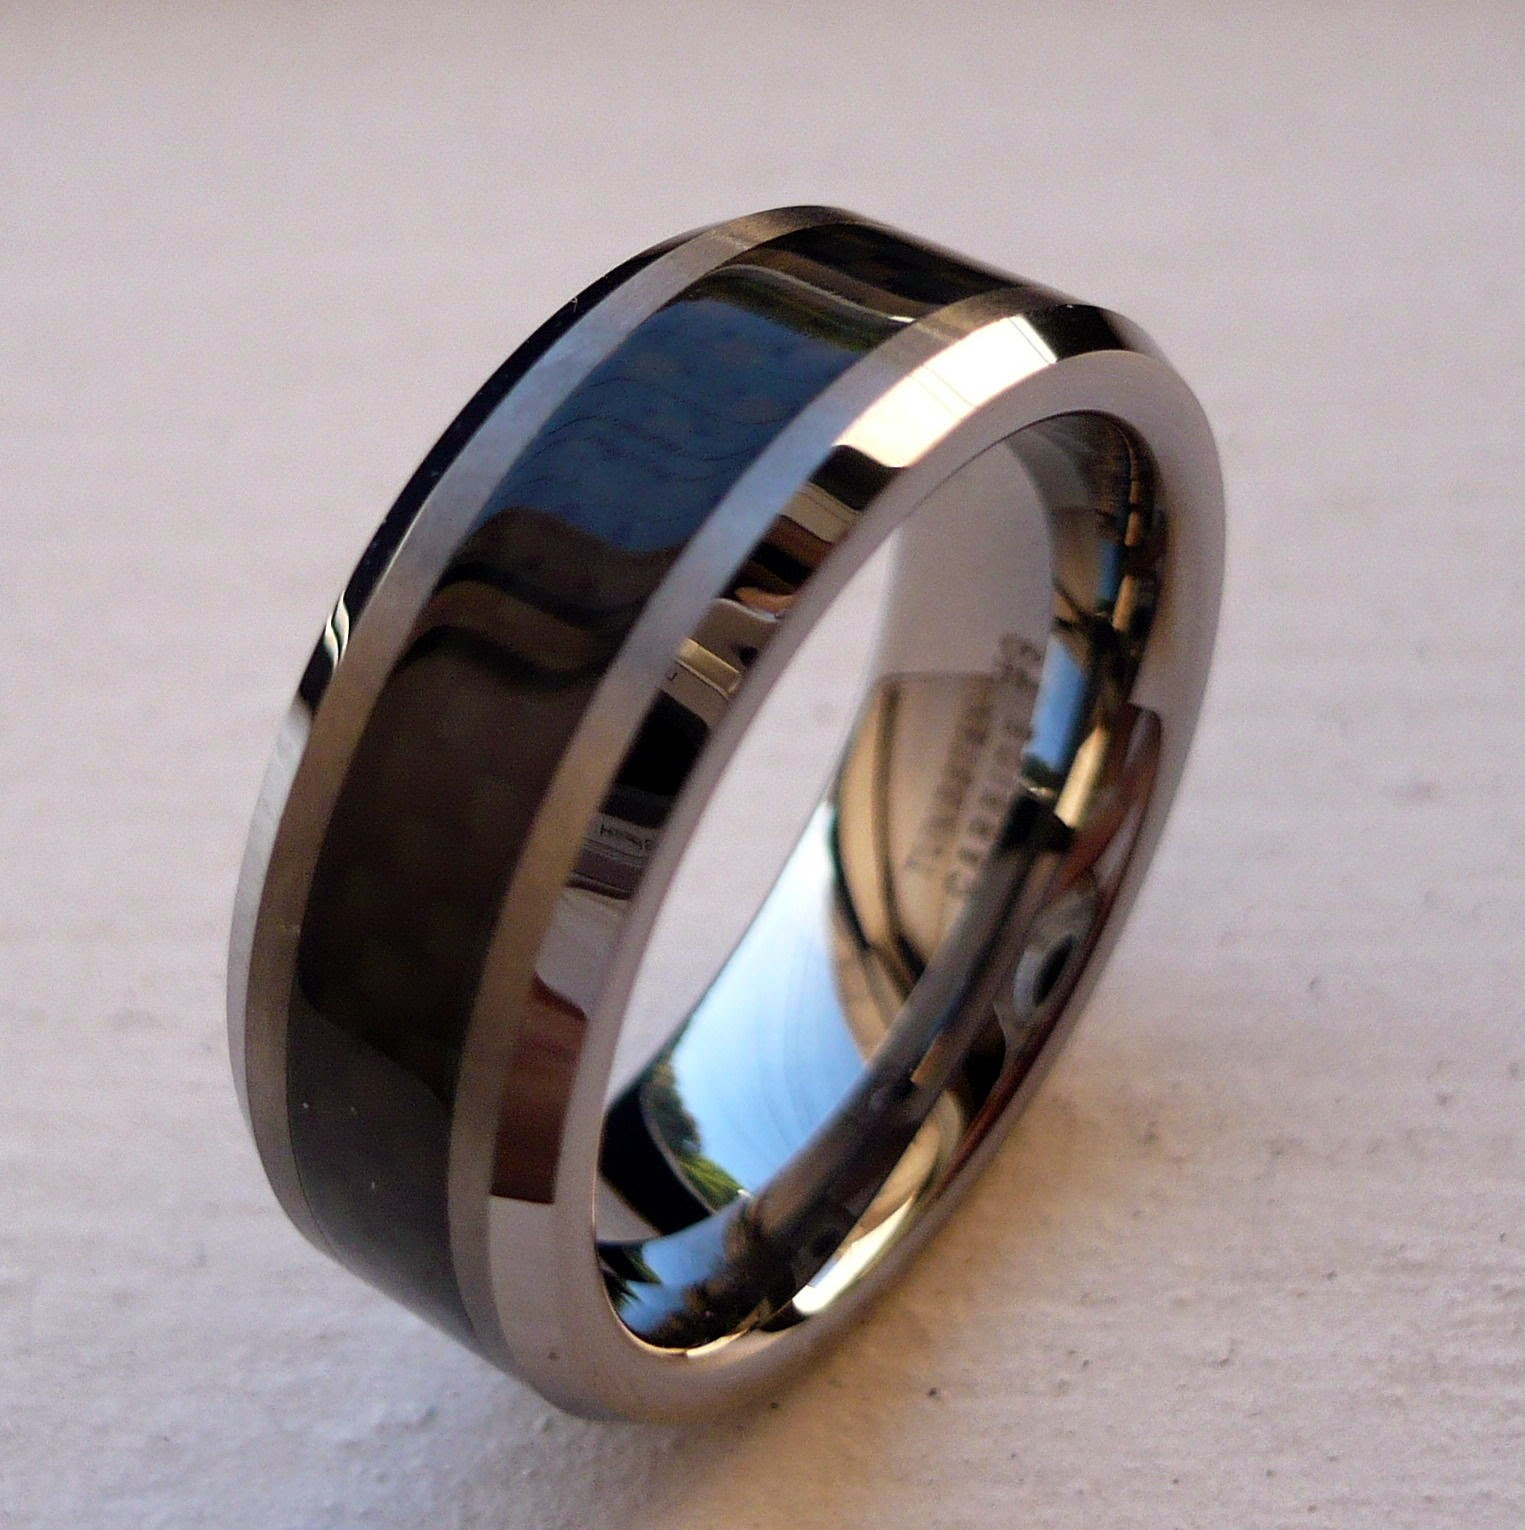 Tungsten Wedding Ring
 Black Tungsten Wedding Bands